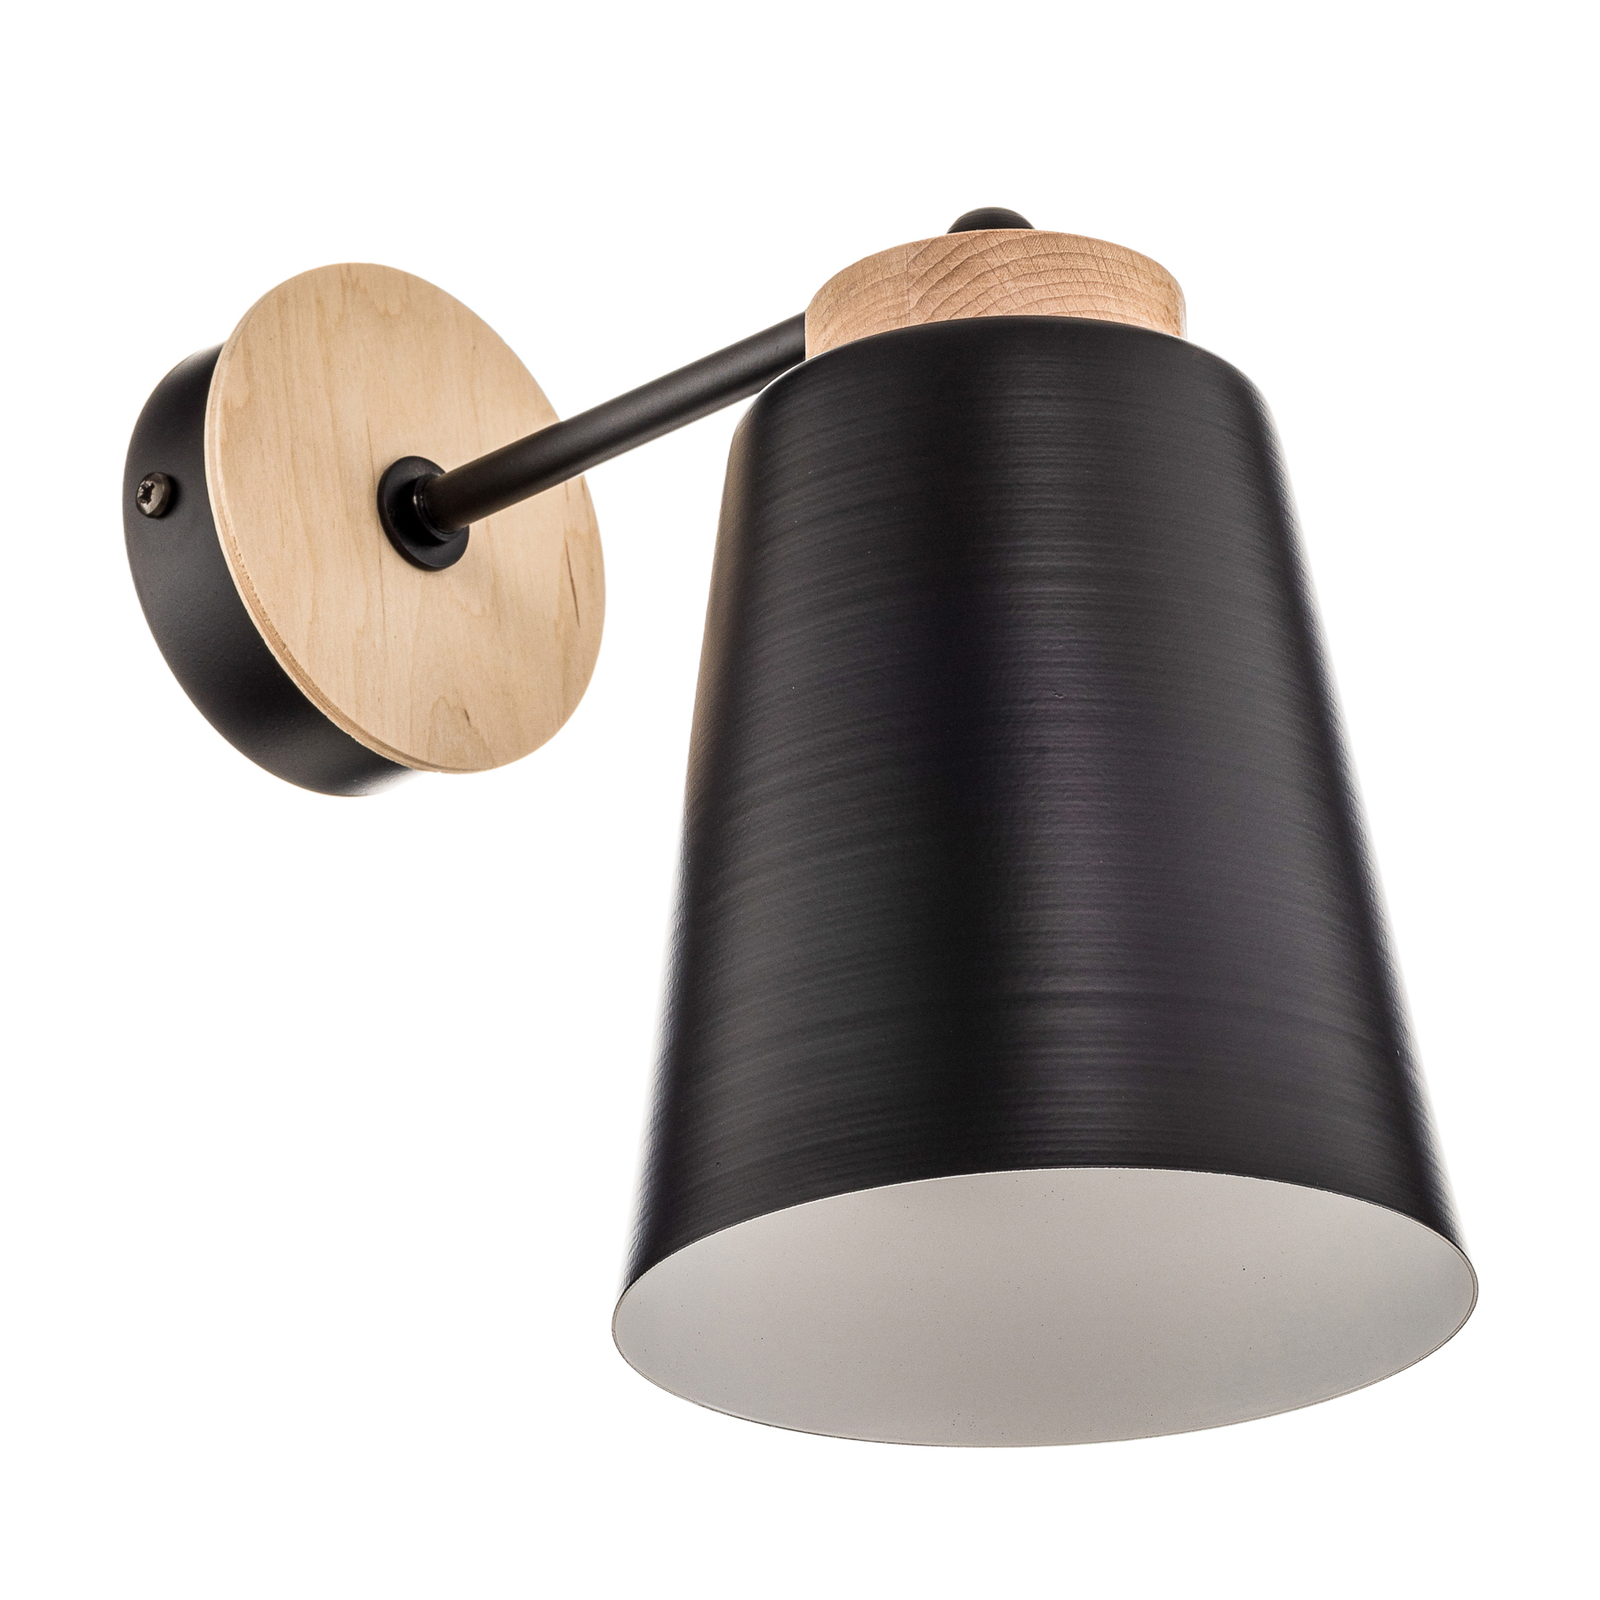 Vegglampe Periot K1 med tredekorasjon, svart